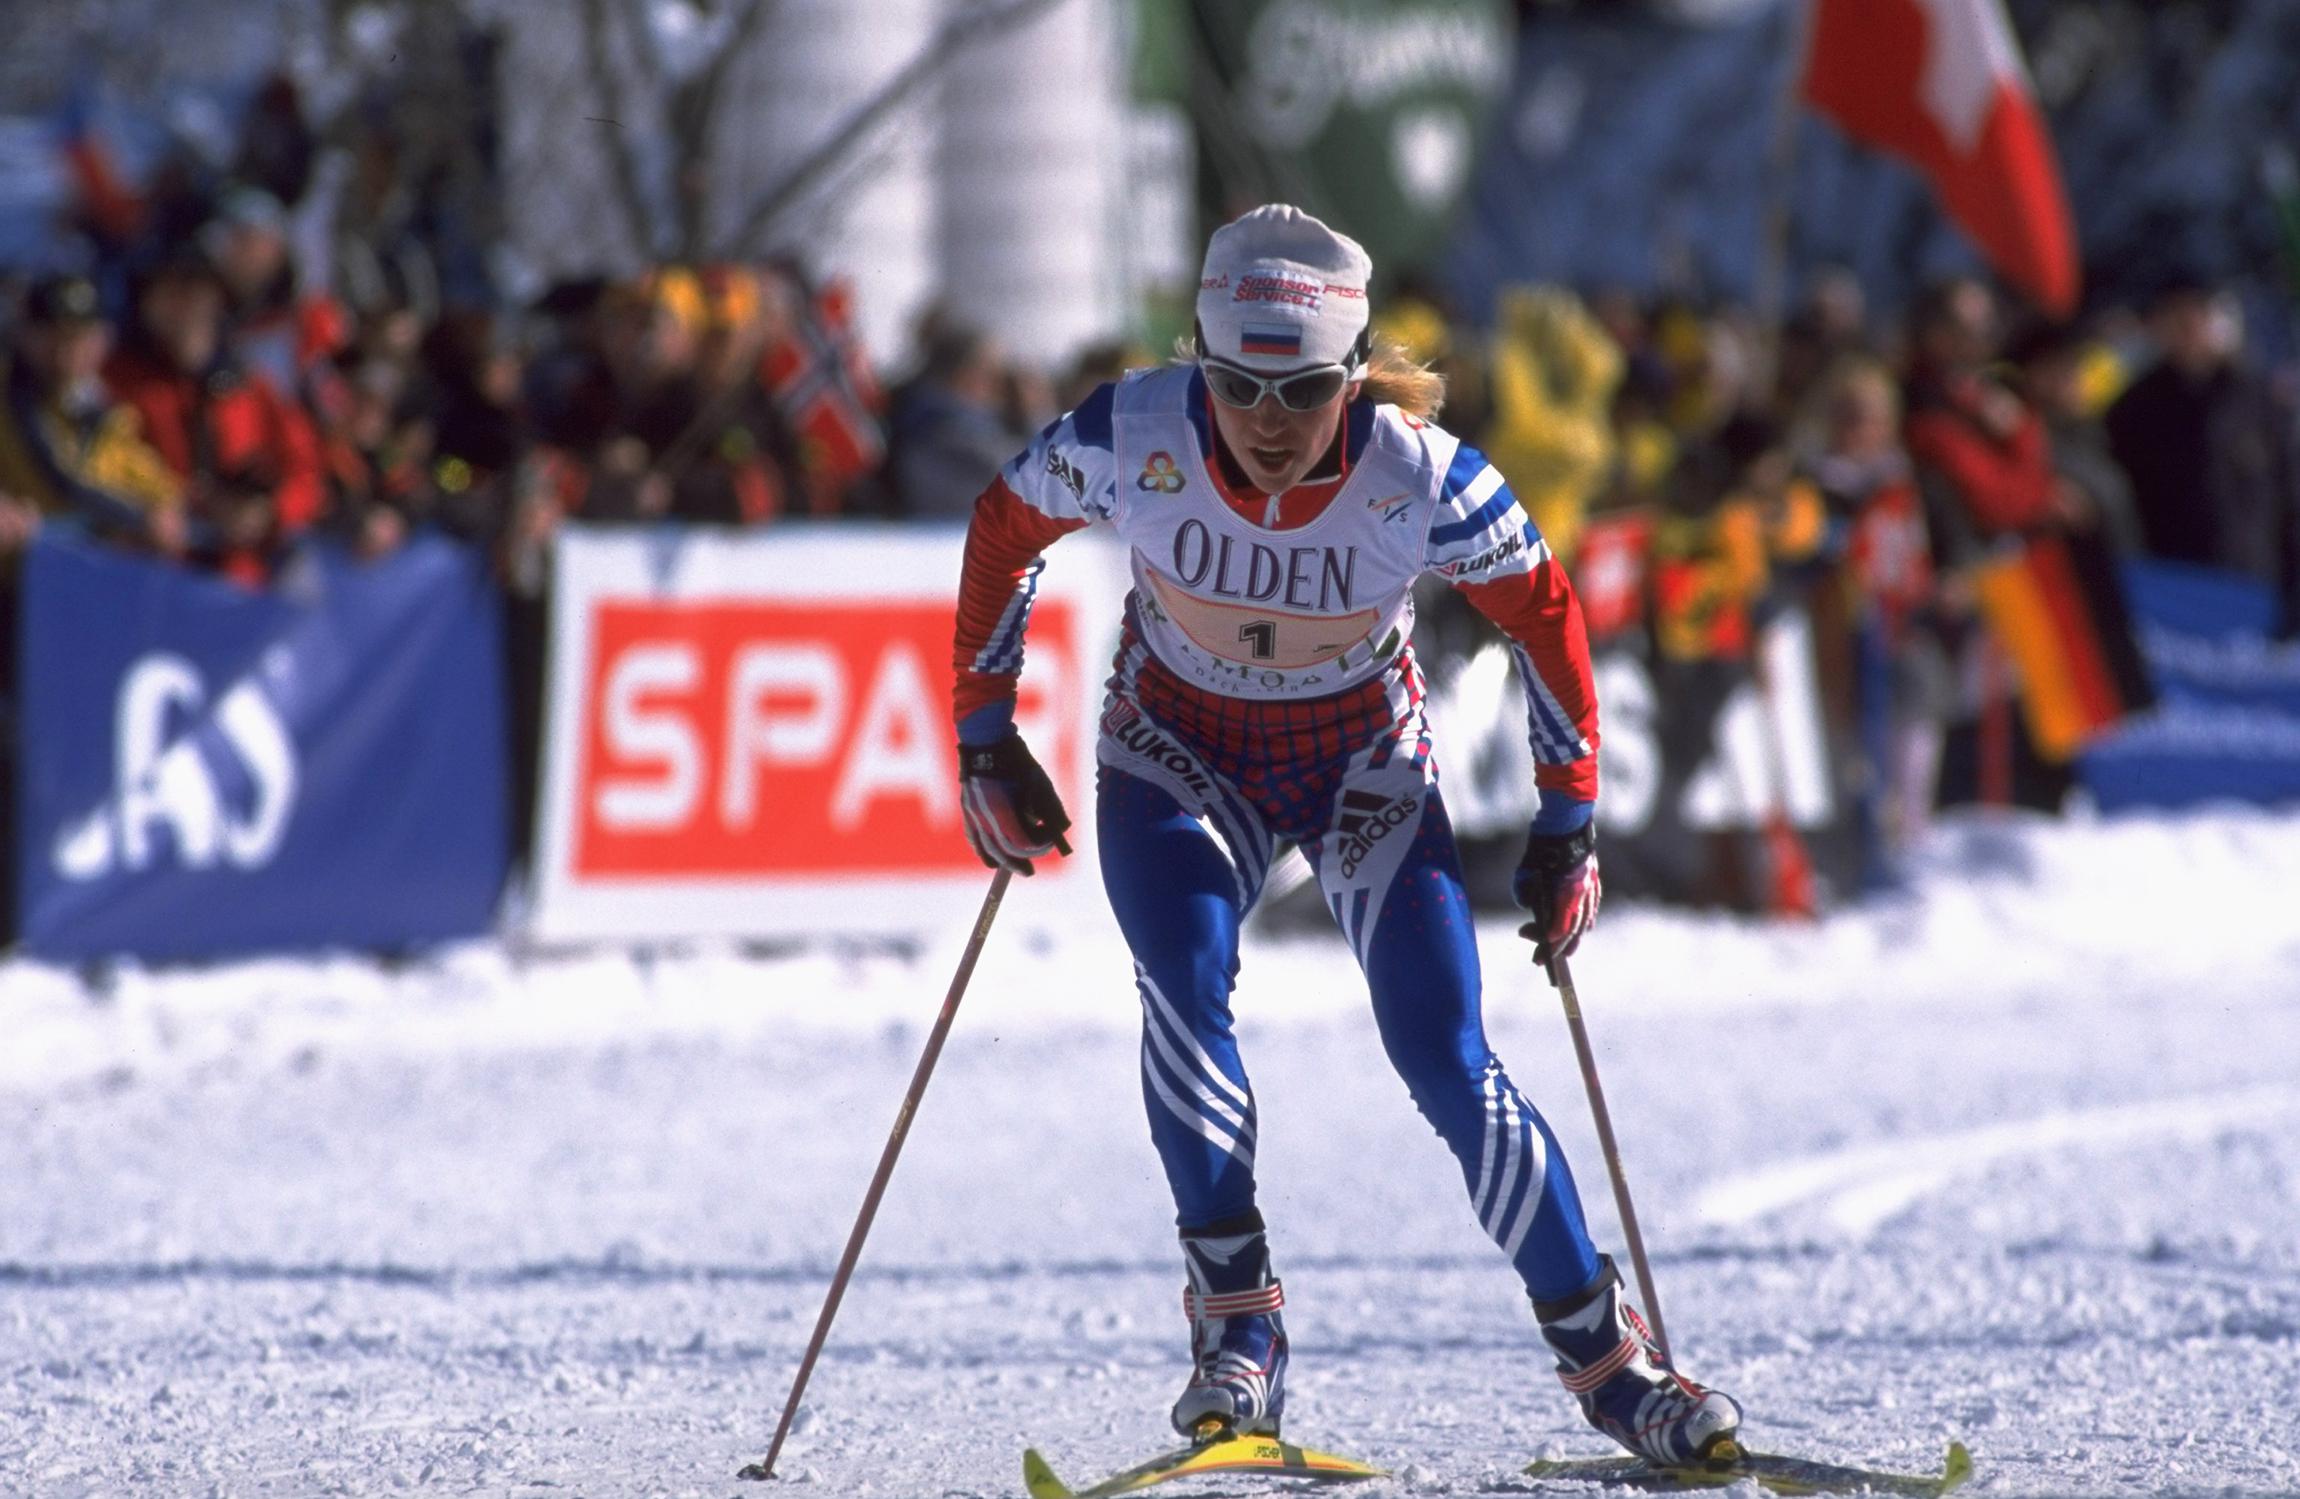 В 1999 году она в последний раз победила на чемпионате мира в Австрии.

На фото: 25 февраля 1999 года. Резцова на дистанции в австрийском Рамзау.
&nbsp;